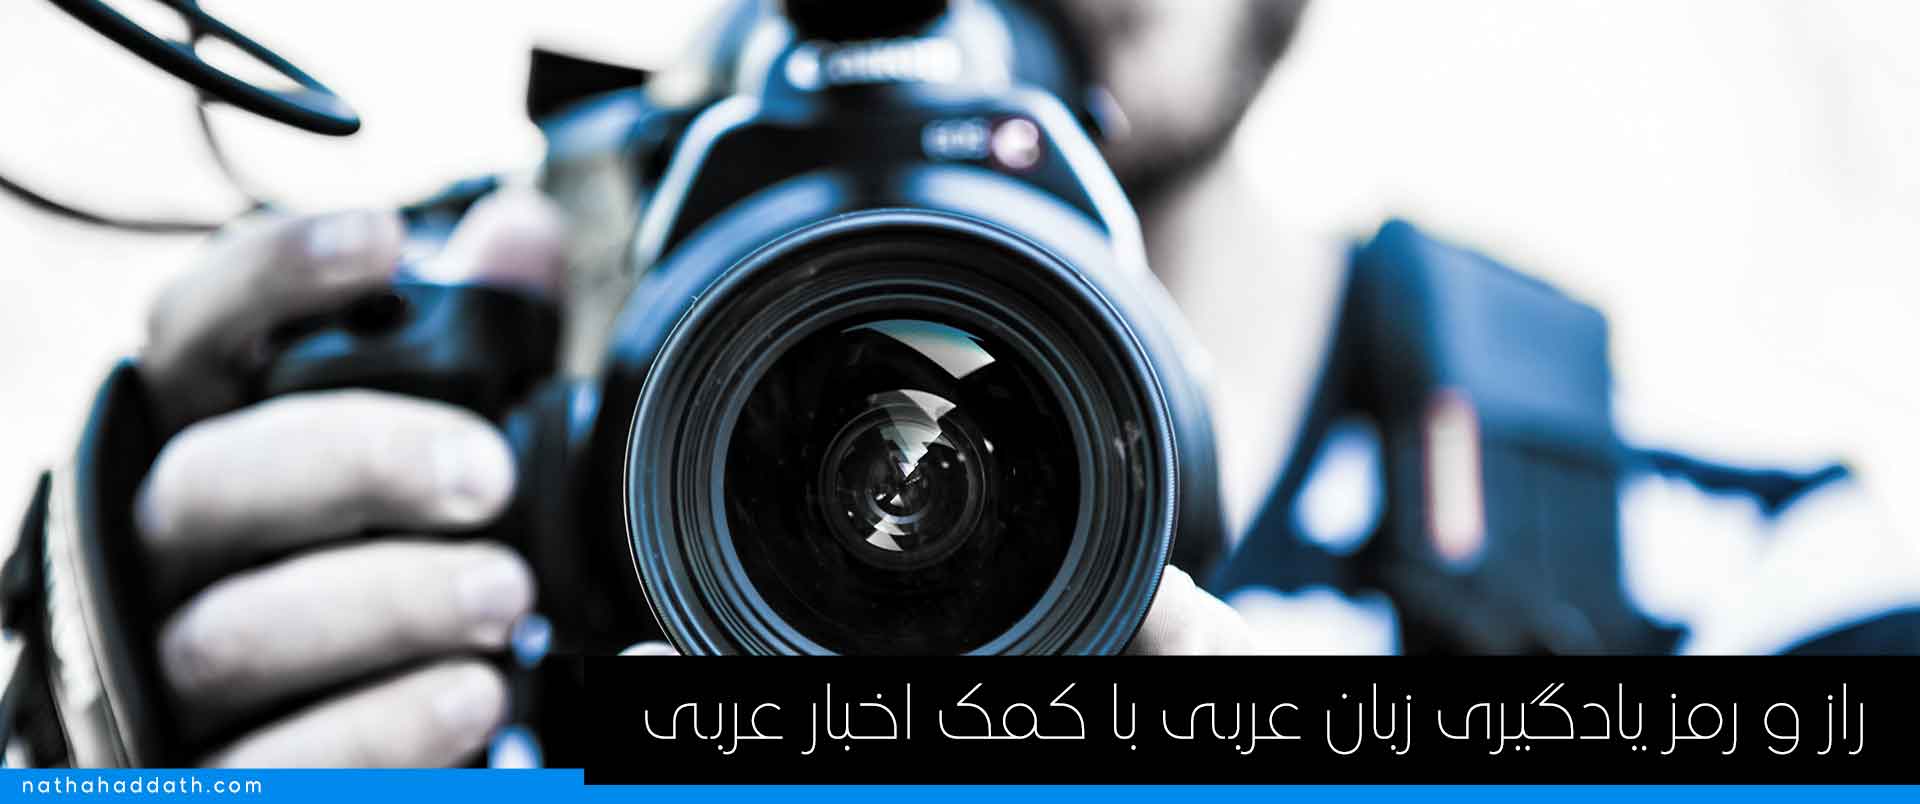 اخبار عربی و زبان رسانه